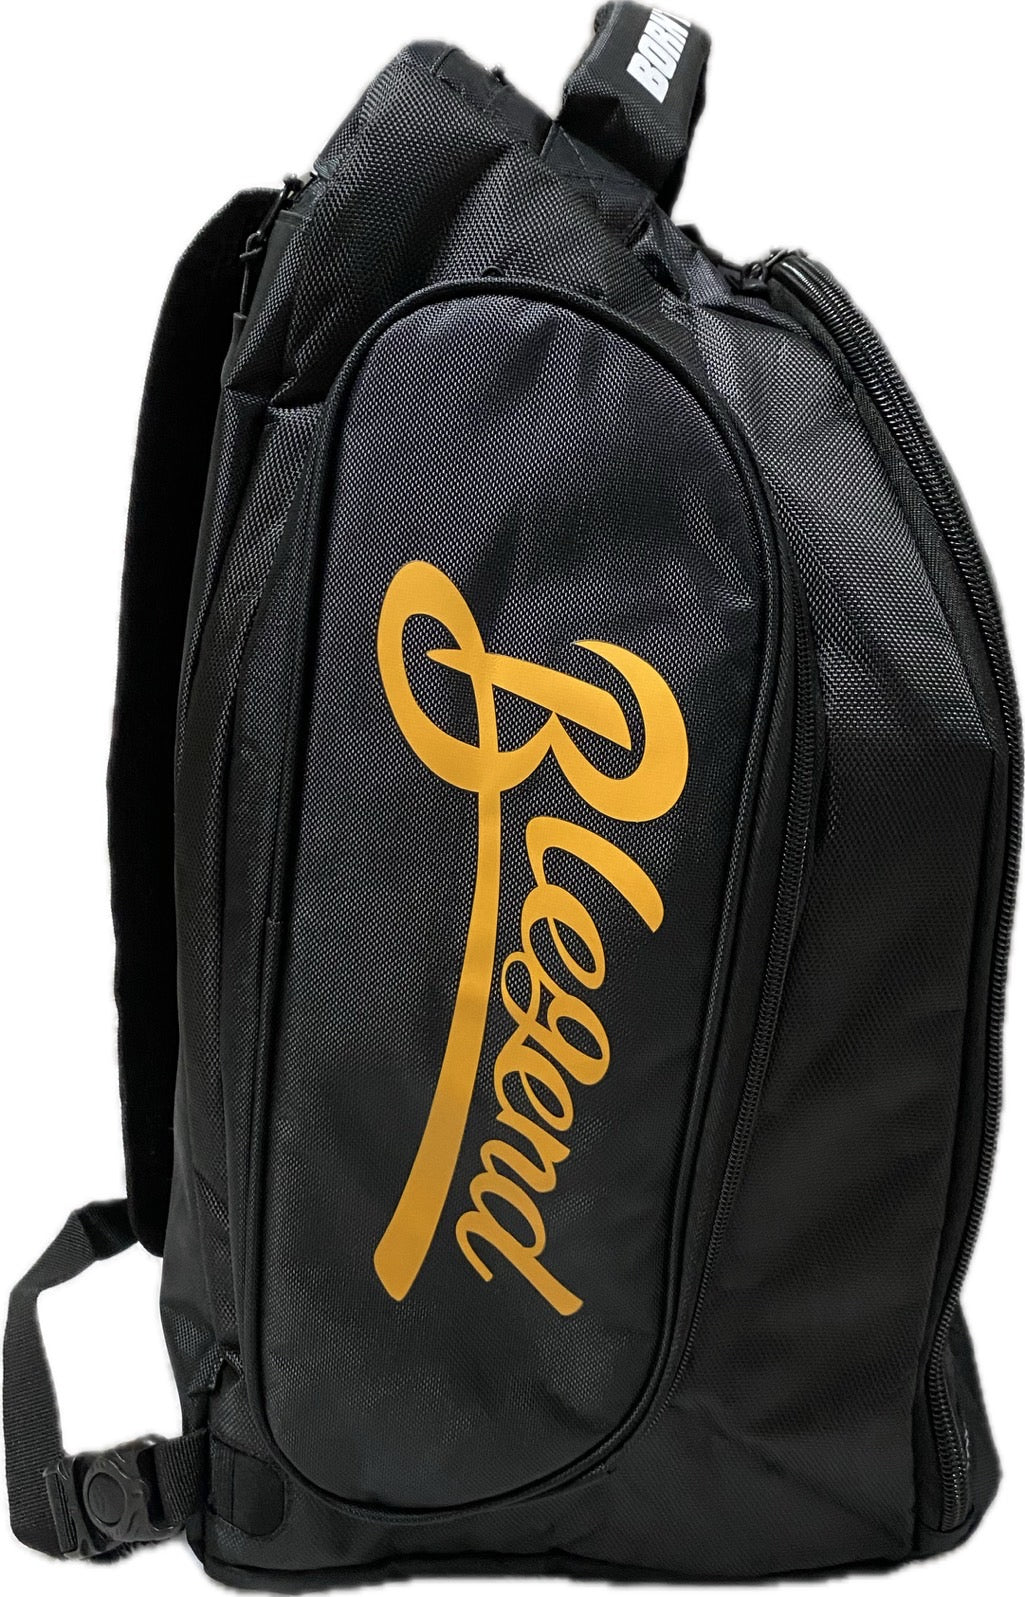 Blegend Gym Bag, Backpack Janta 1